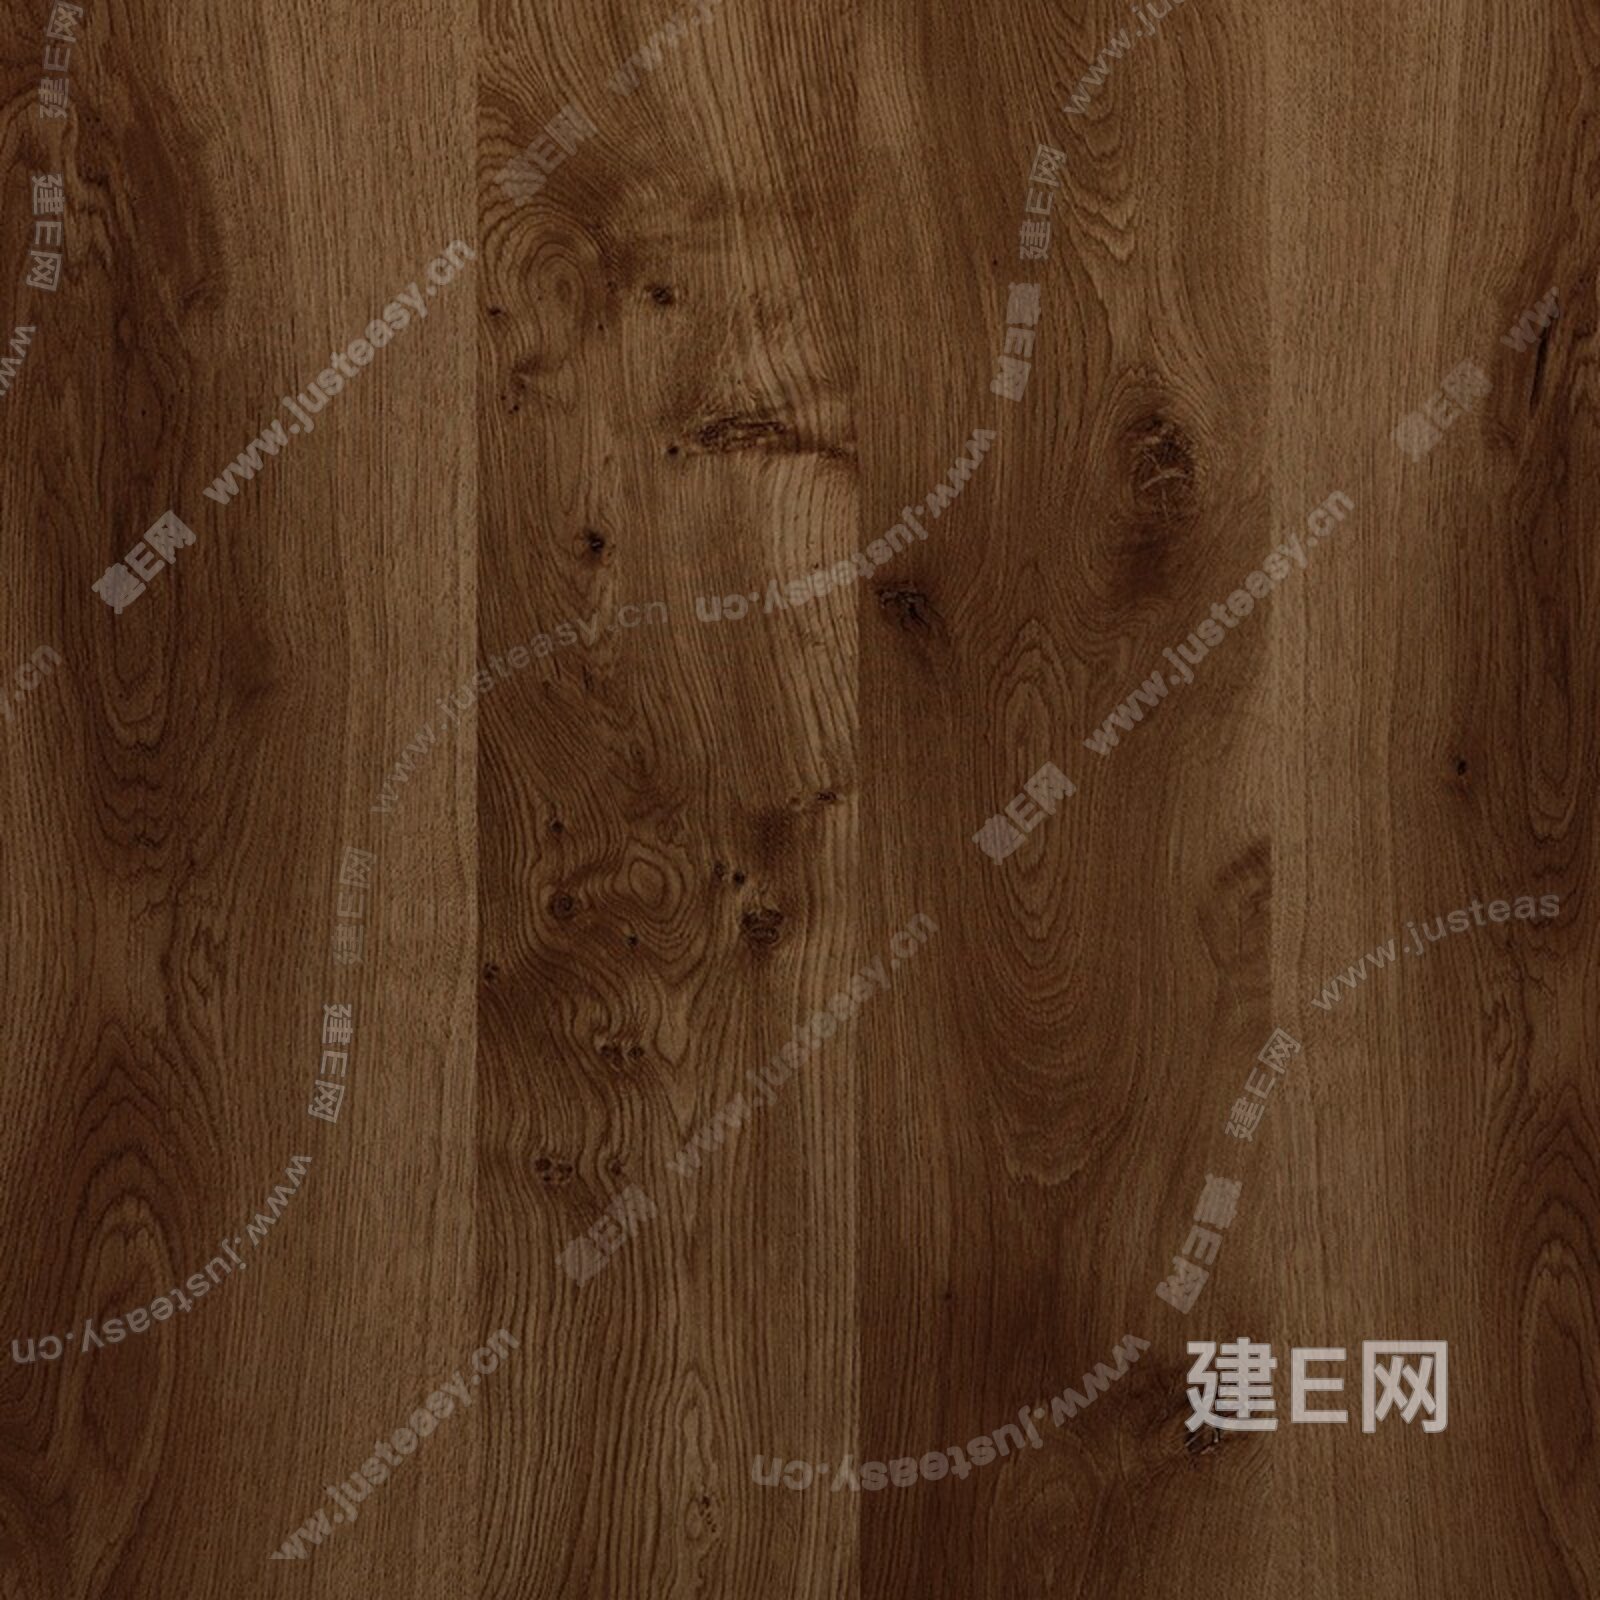 深棕色木纹木饰面3d贴图下载[ID:113592937]_建E室内设计网